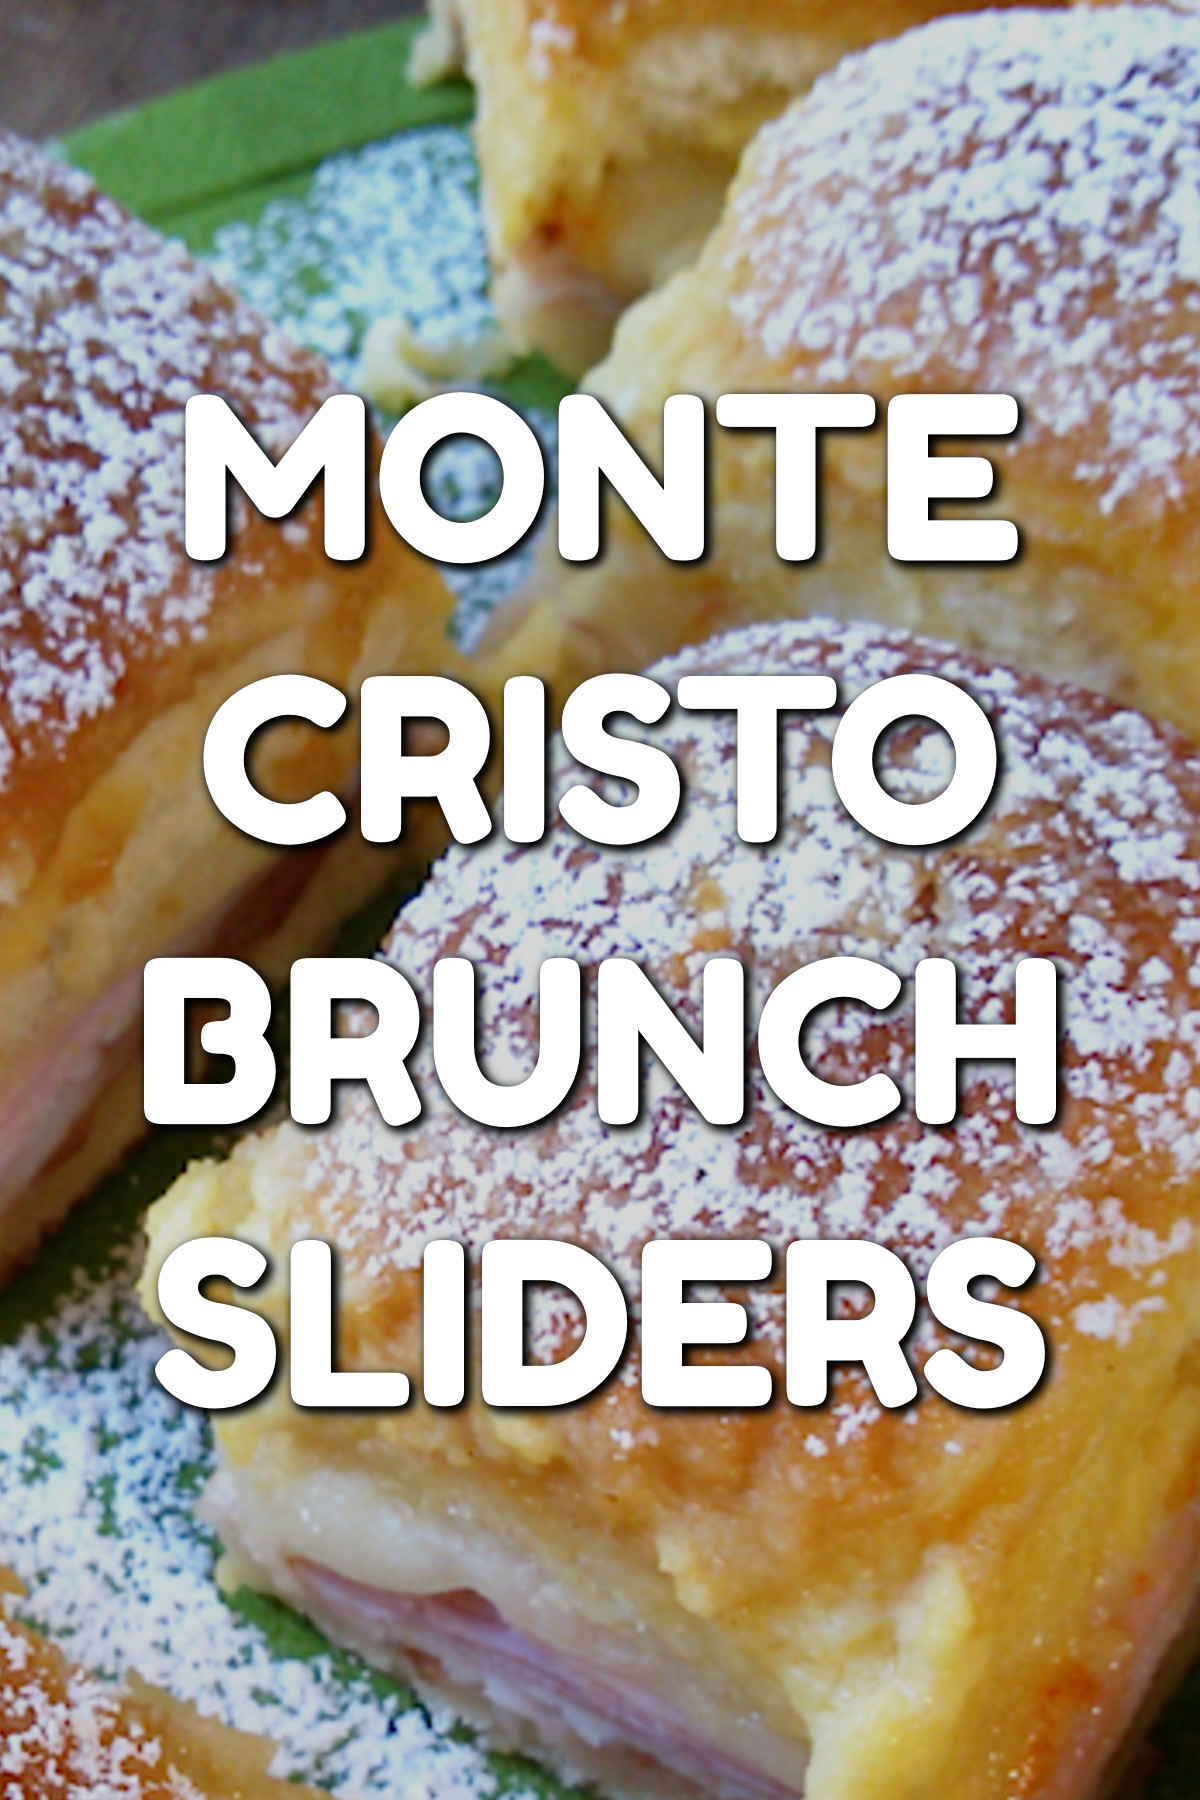 brunch food ideas - Monte Cristo Brunch Sliders